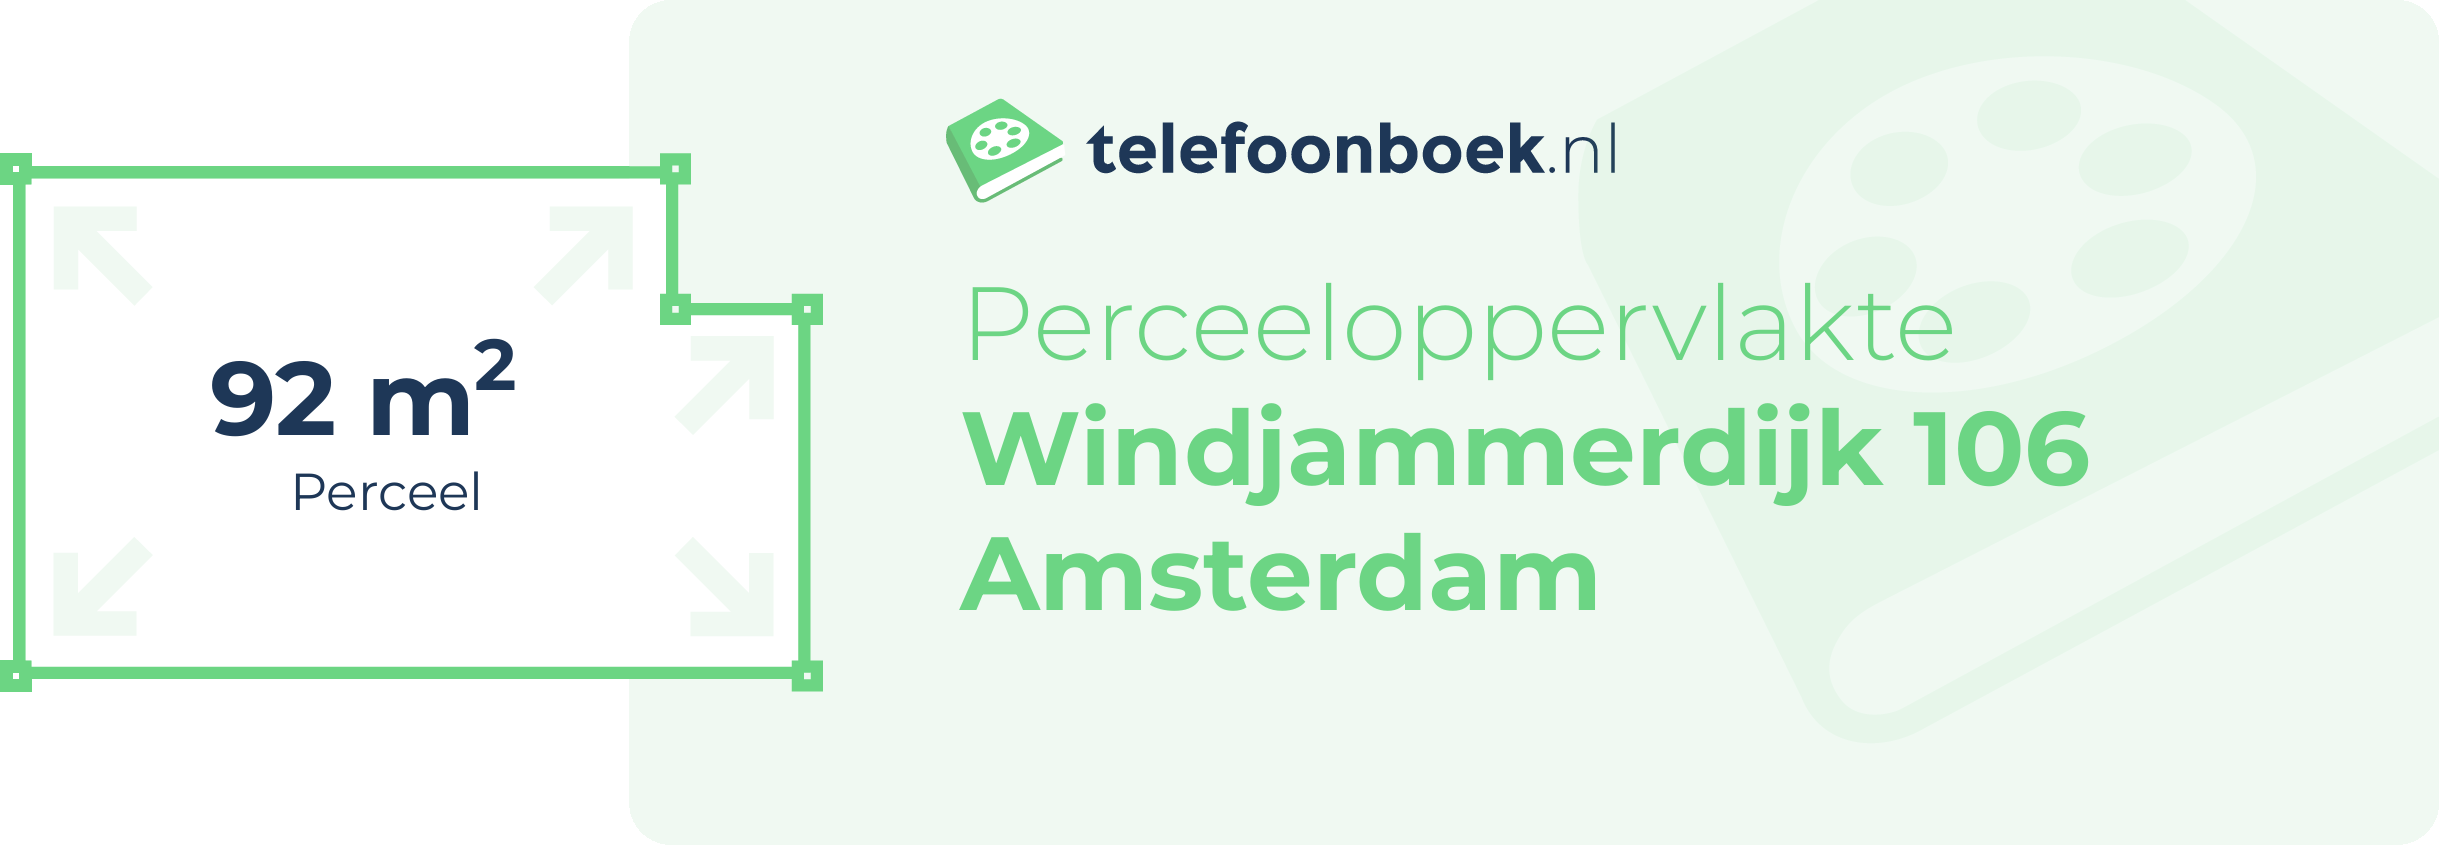 Perceeloppervlakte Windjammerdijk 106 Amsterdam